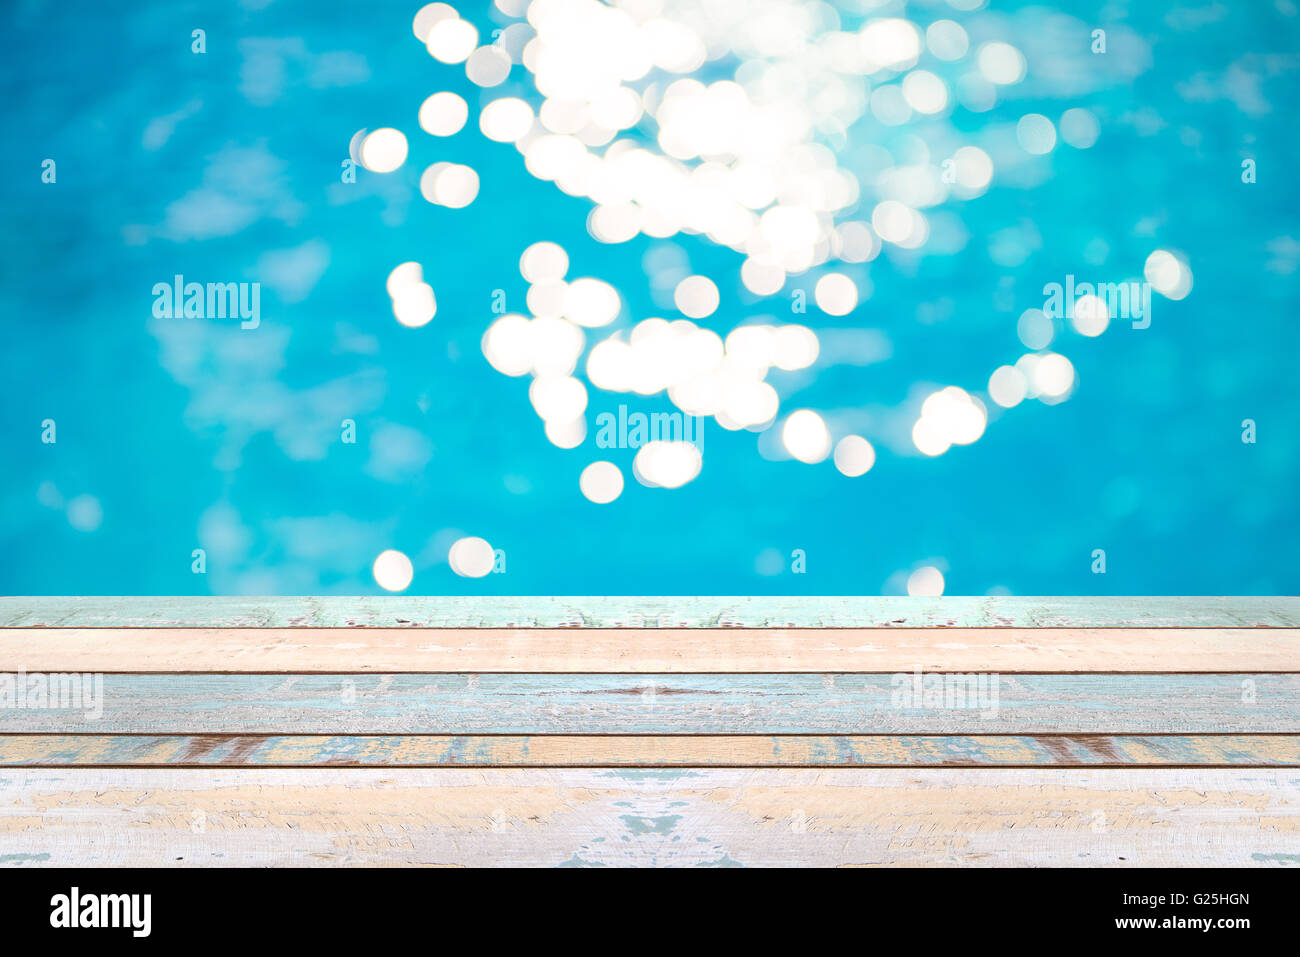 Legno in prospettiva del tavolo e soft focus bokeh di fondo gli effetti di luce su un variegato, blu sullo sfondo di acqua in piscina, display del prodotto Foto Stock